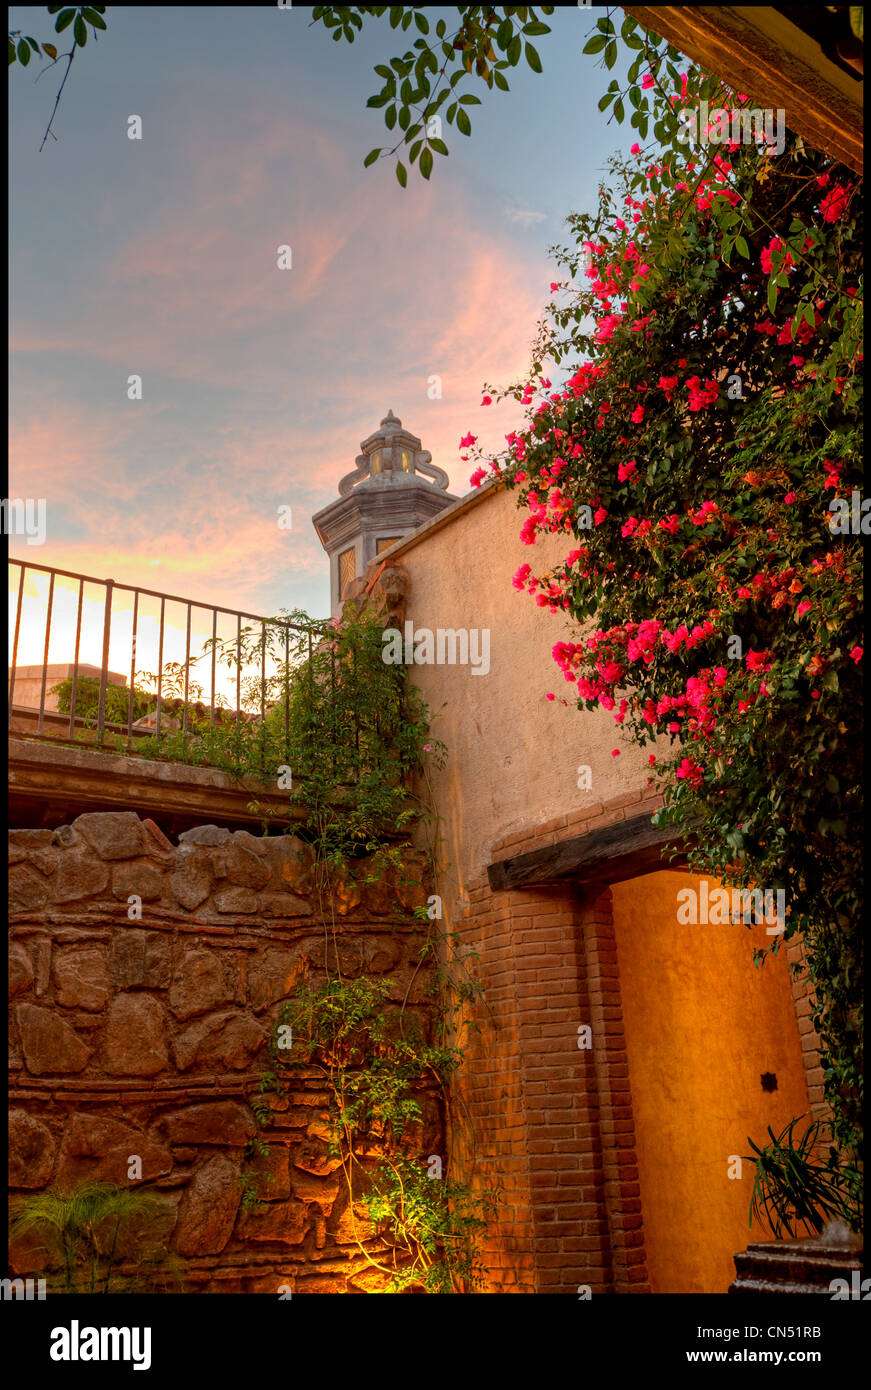 A garden courtyard at El Convento in Antigua Guatemala. Stock Photo